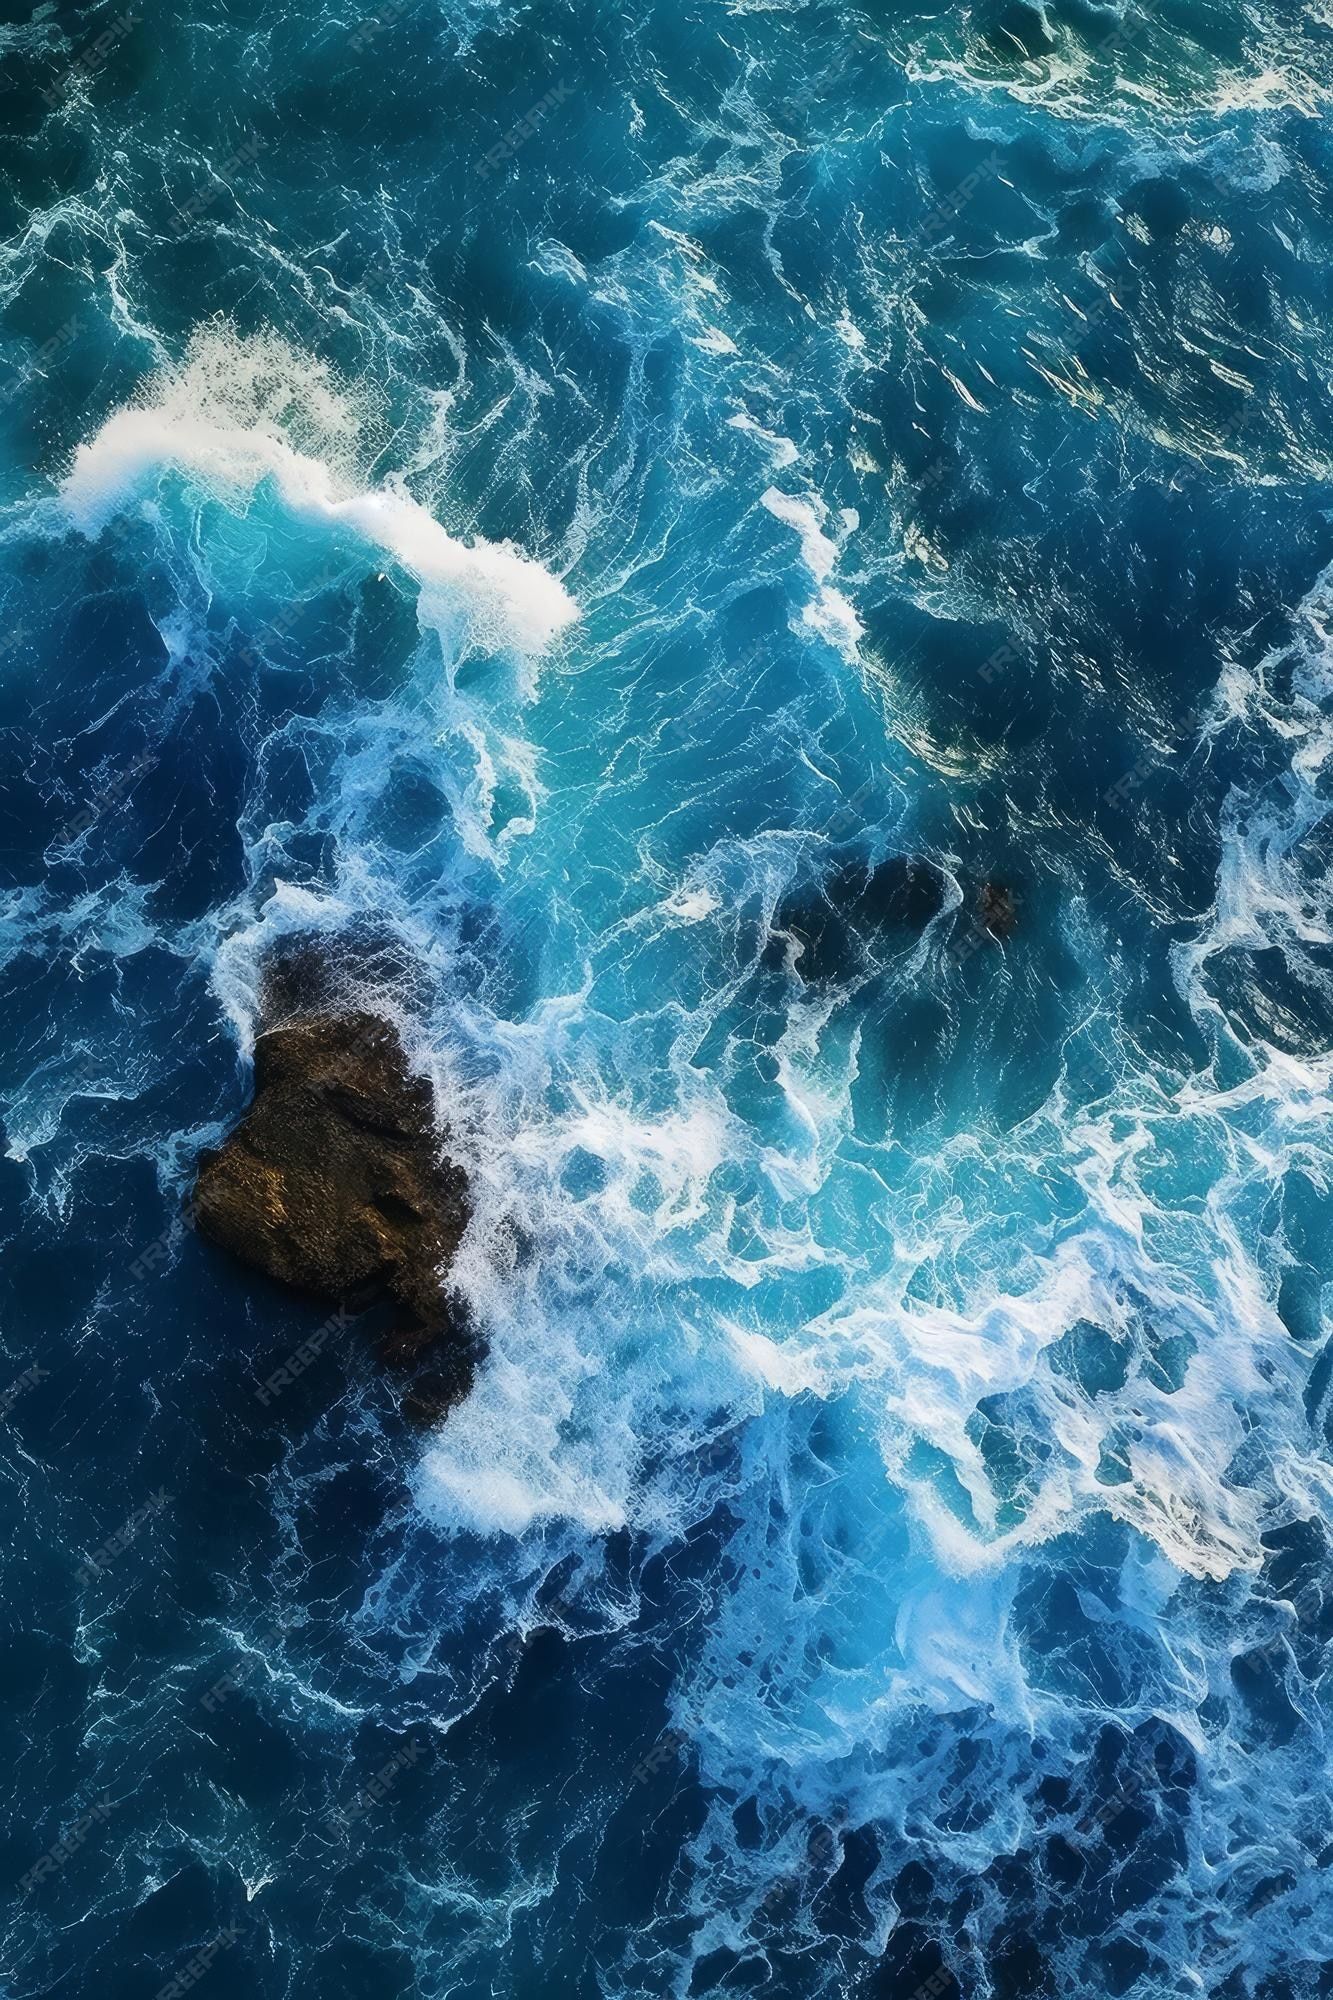  Wellen Hintergrundbild 1333x2000. Blaues wasser aus einer draufsicht mit wellen